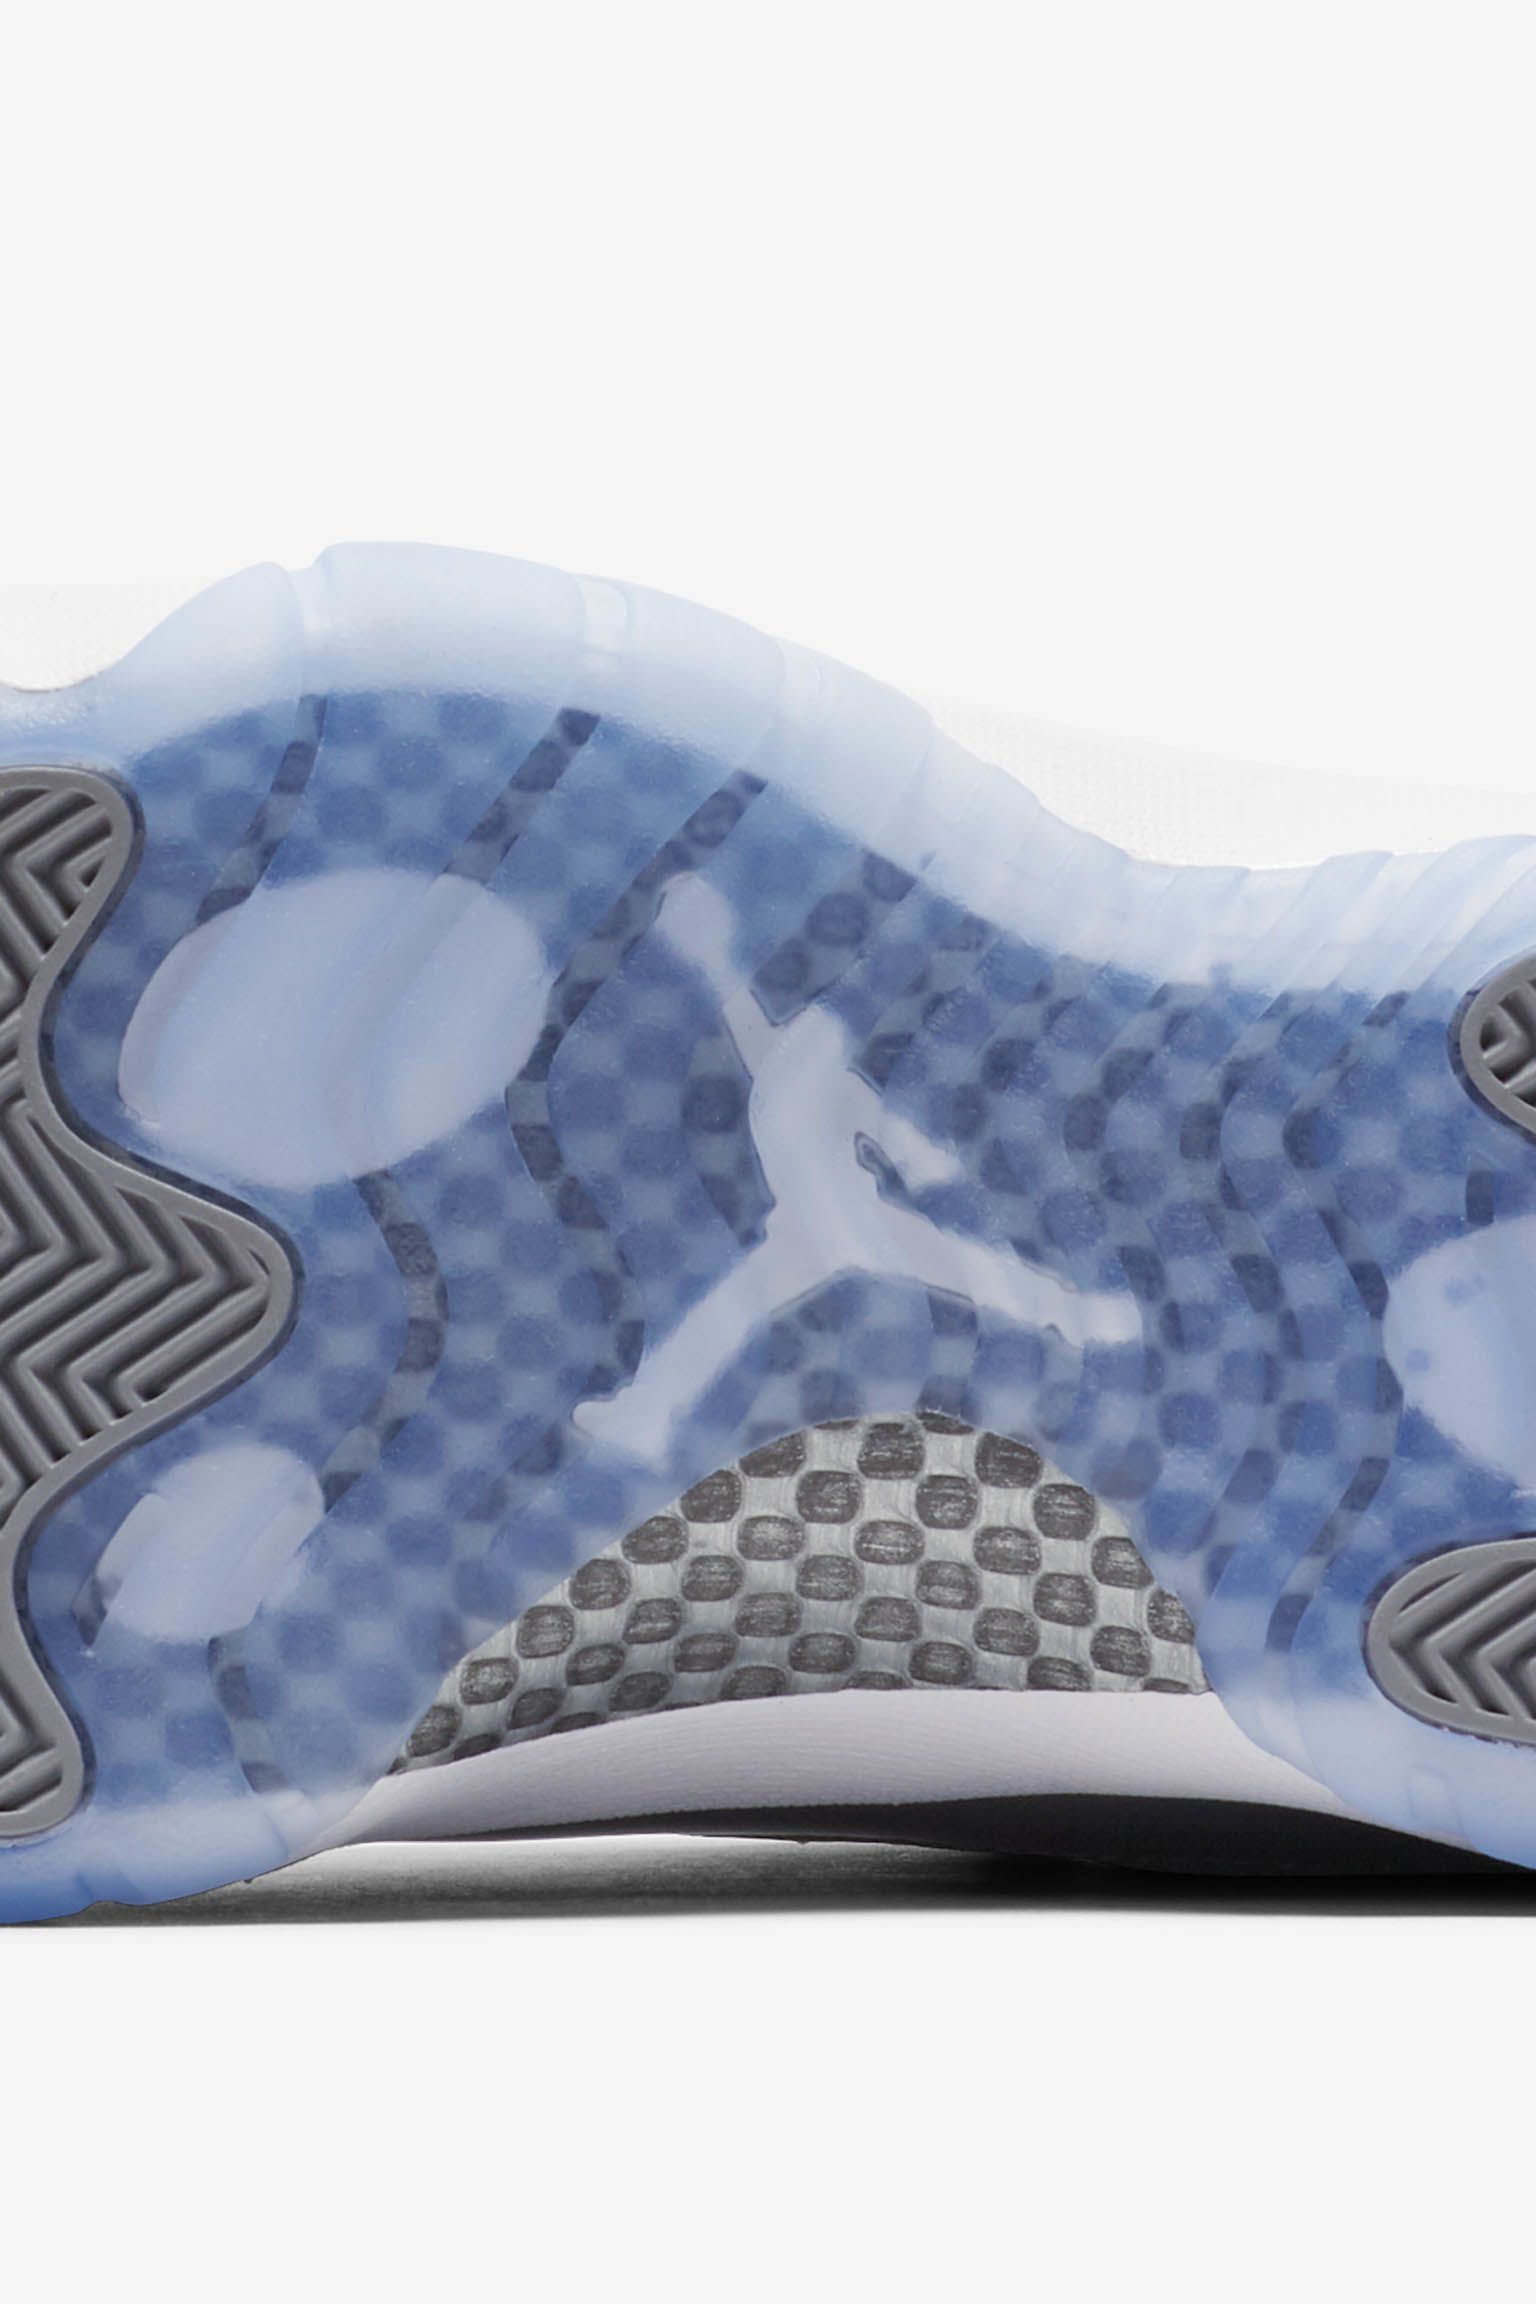 Air Jordan 11 Low 'Cool Grey' Release Date. Nike SNKRS GB